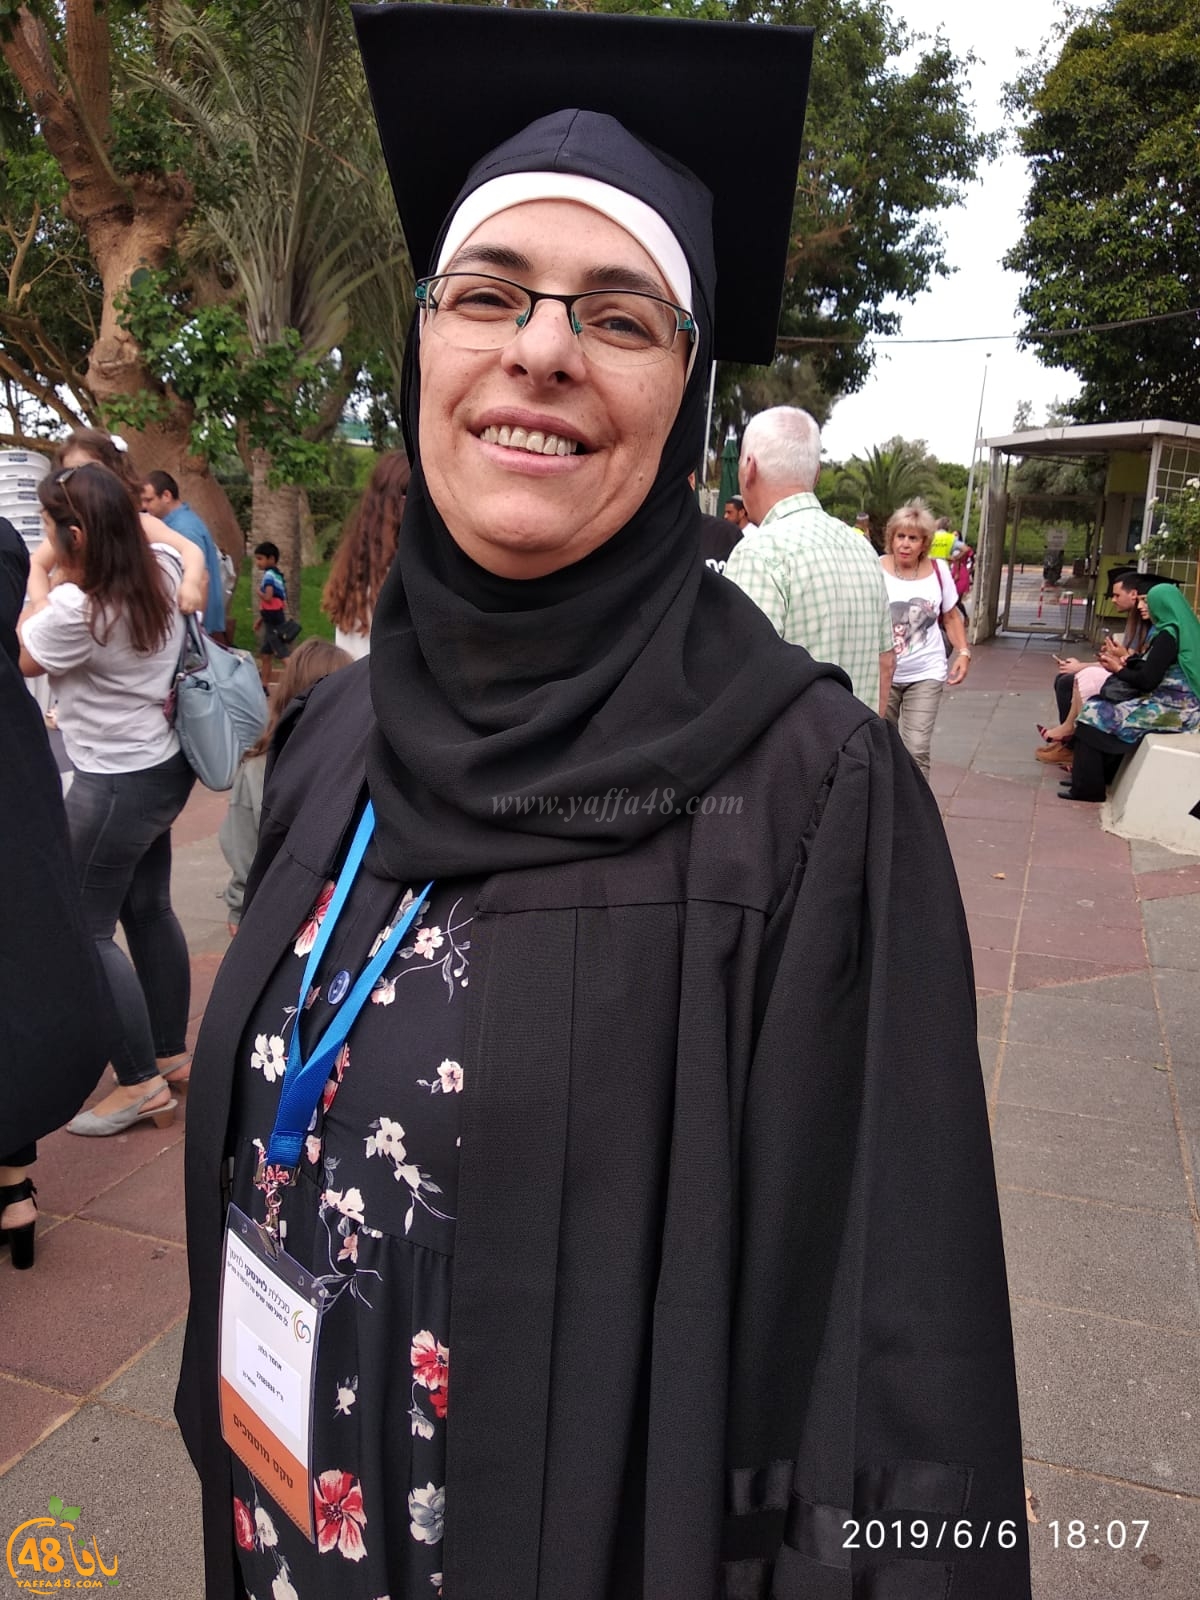 مبروك: المربية هالة أحمد أبو لسان من يافا تحصل على درجة الماجستير في التربية